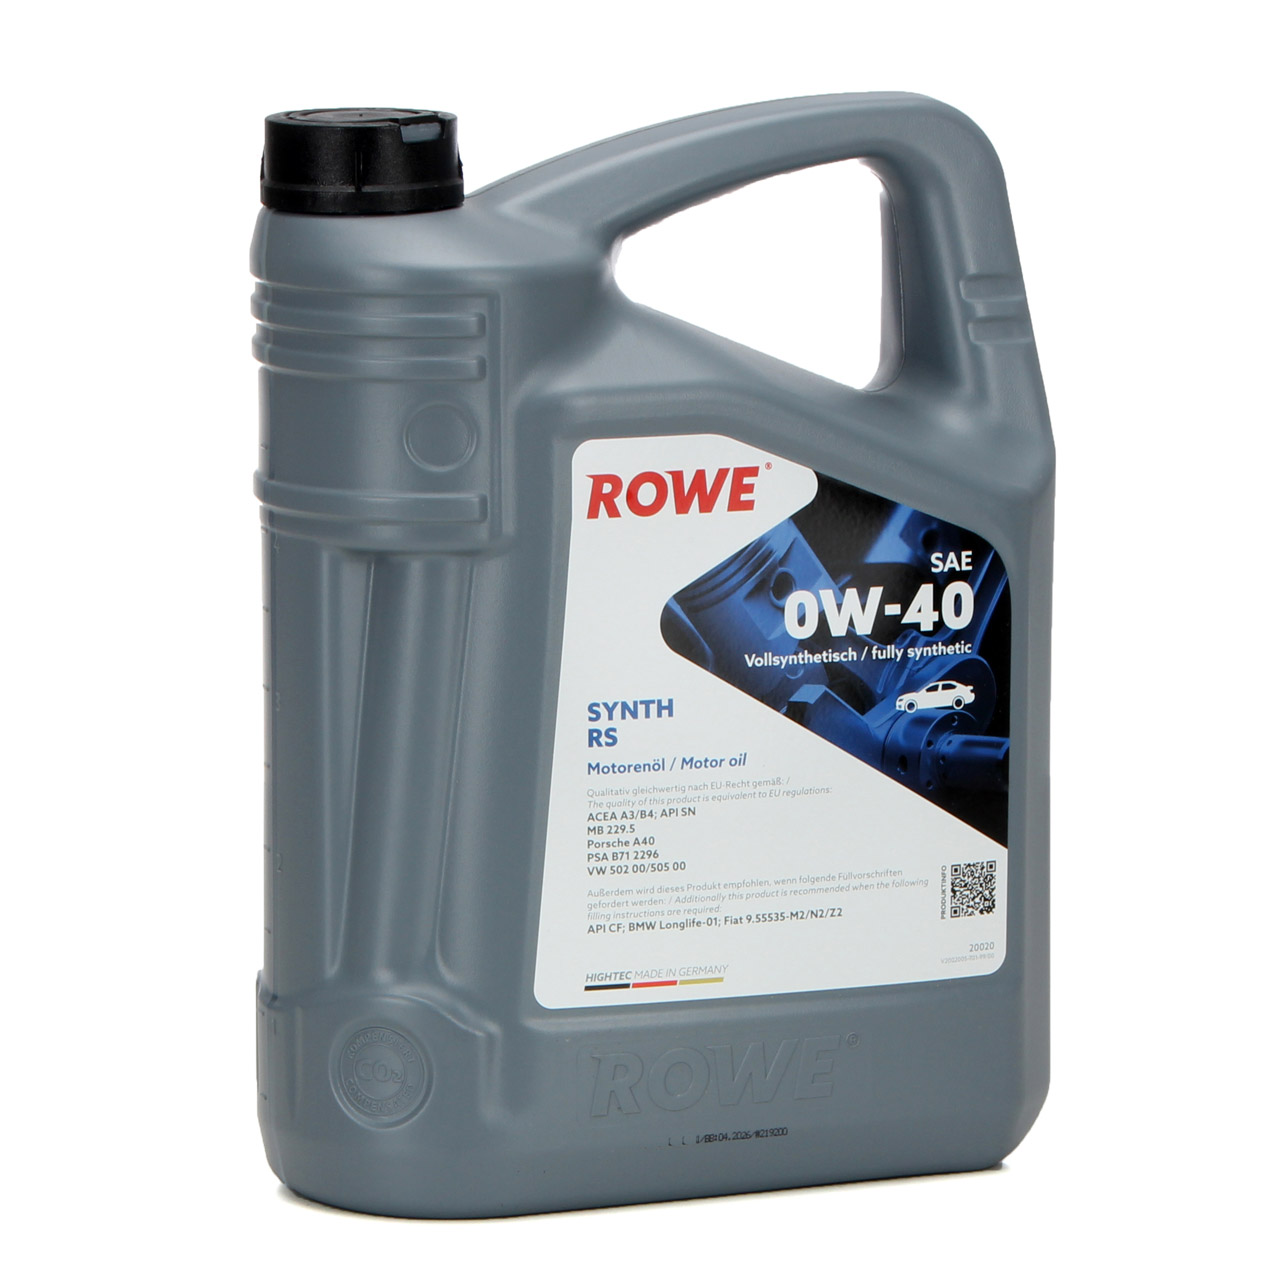 10L 10 Liter ROWE SYNTH RS 0W40 Motoröl Öl MB 229.5 Porsche A40 PSA B712296 VW 502/505.00